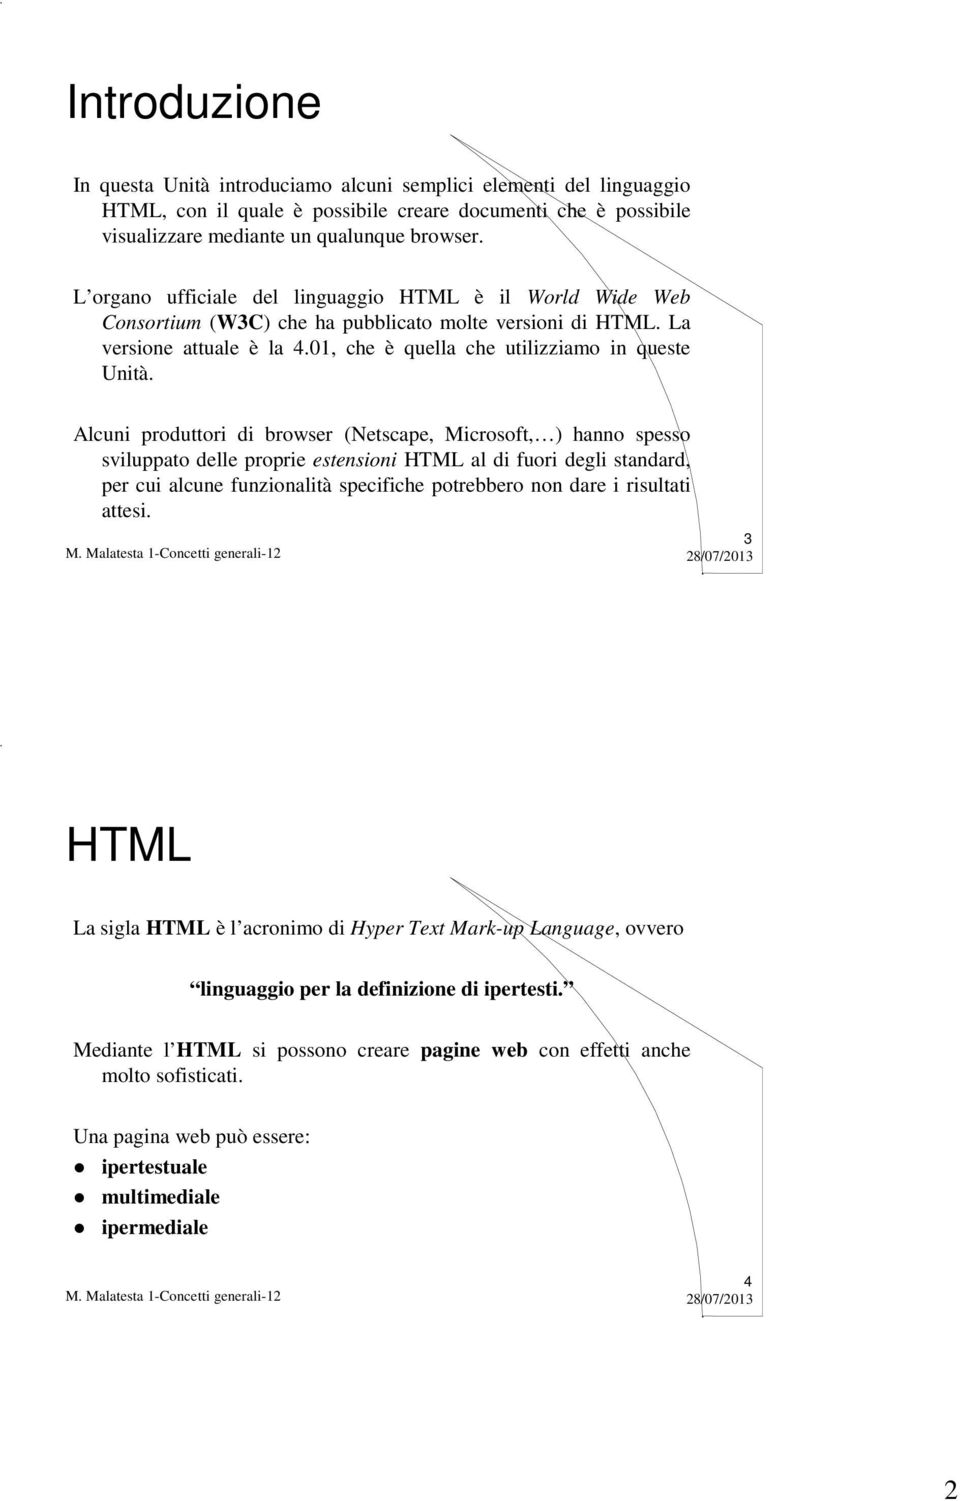 Alcuni produttori di browser (Netscape, Microsoft, ) hanno spesso sviluppato delle proprie estensioni HTML al di fuori degli standard, per cui alcune funzionalità specifiche potrebbero non dare i